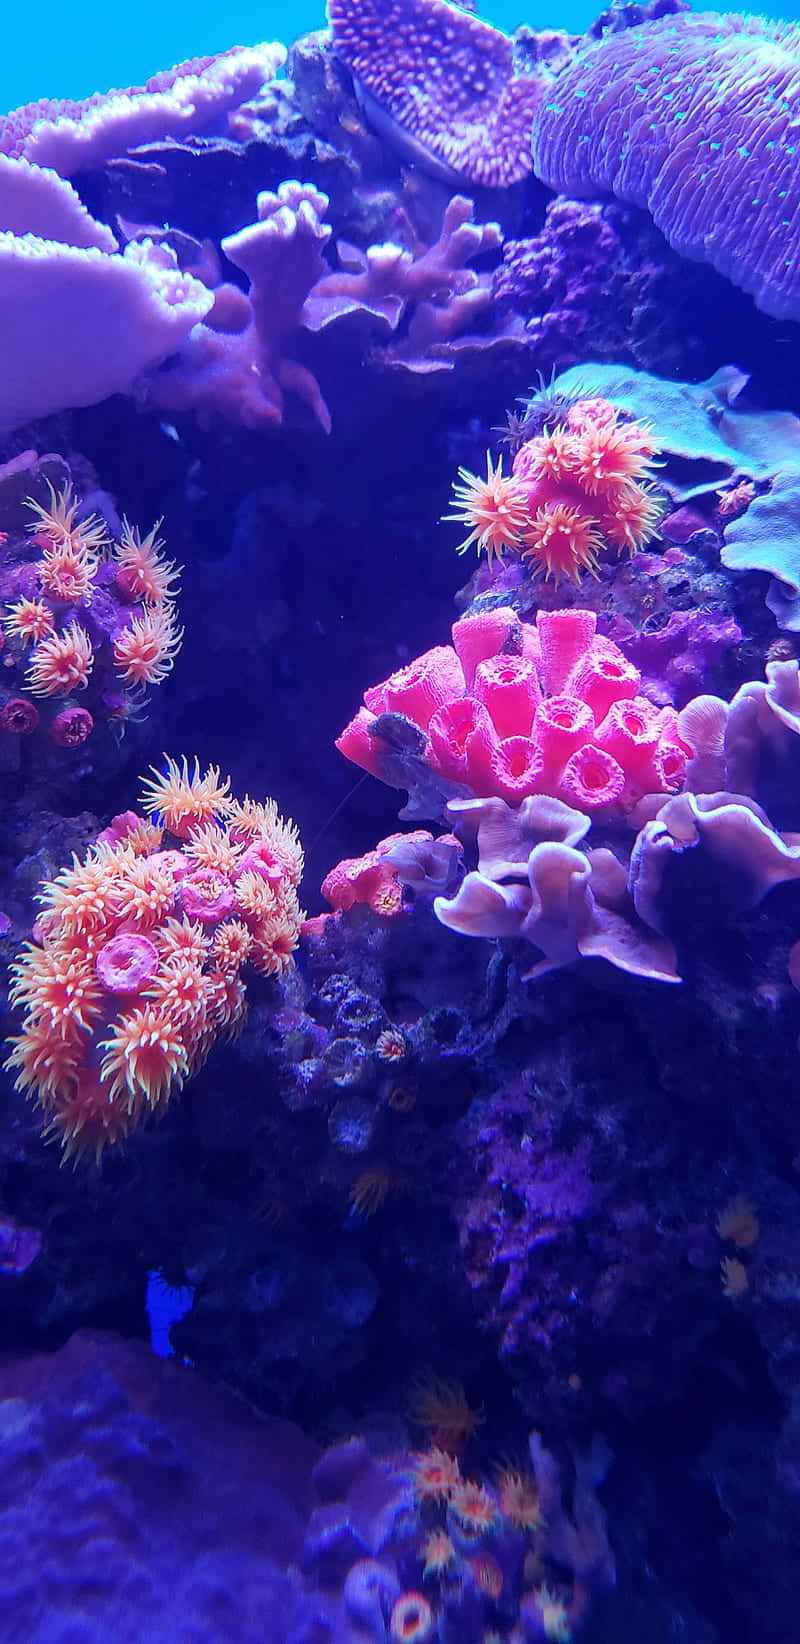 A brilliant multi-colored underwater coral reef